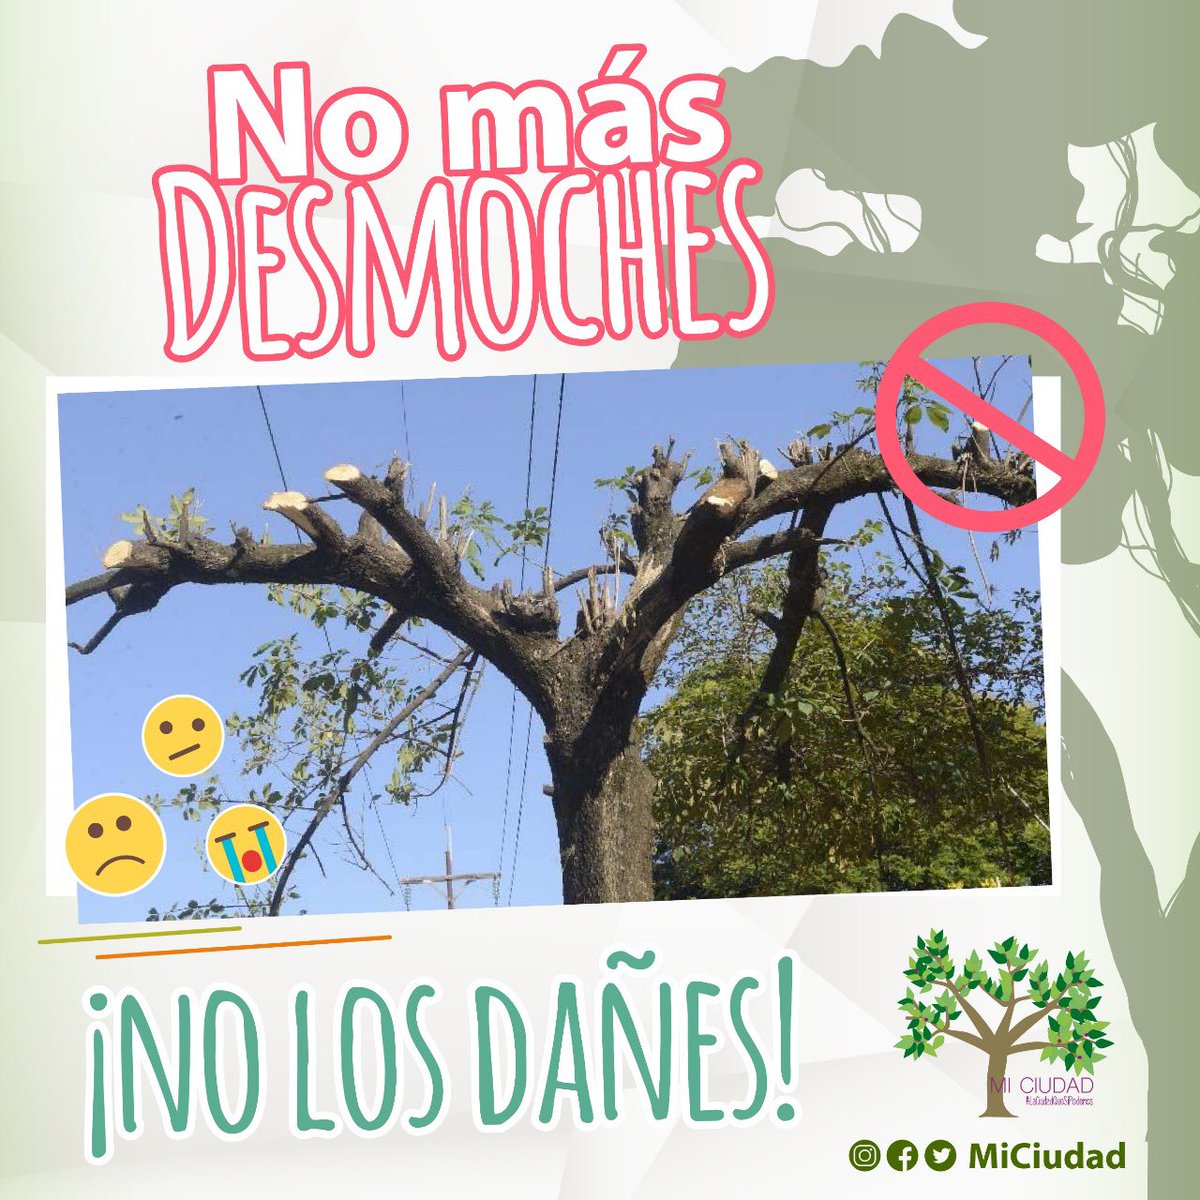 Cuida los árboles de tu ciudad. 
Nuestro clima y nuestra vegetación son lo que nos hace una ciudad especial.  No acabemos con eso! #Cuernavaca #MiCiudad #EternaPrimavera #HacemosComunidad